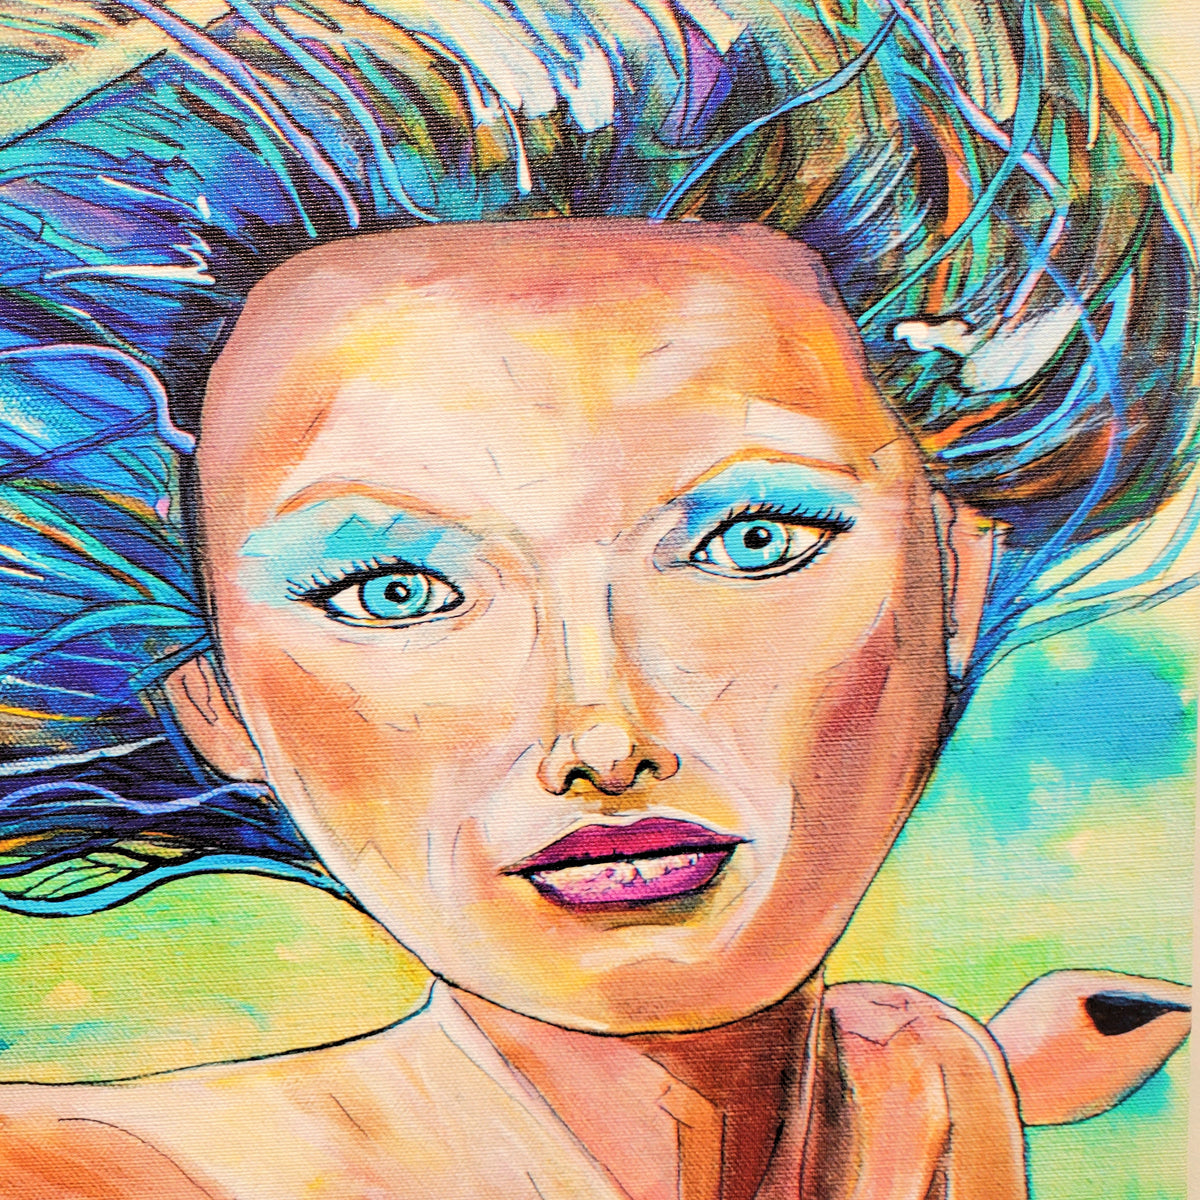 Mermaid Print on Canvas